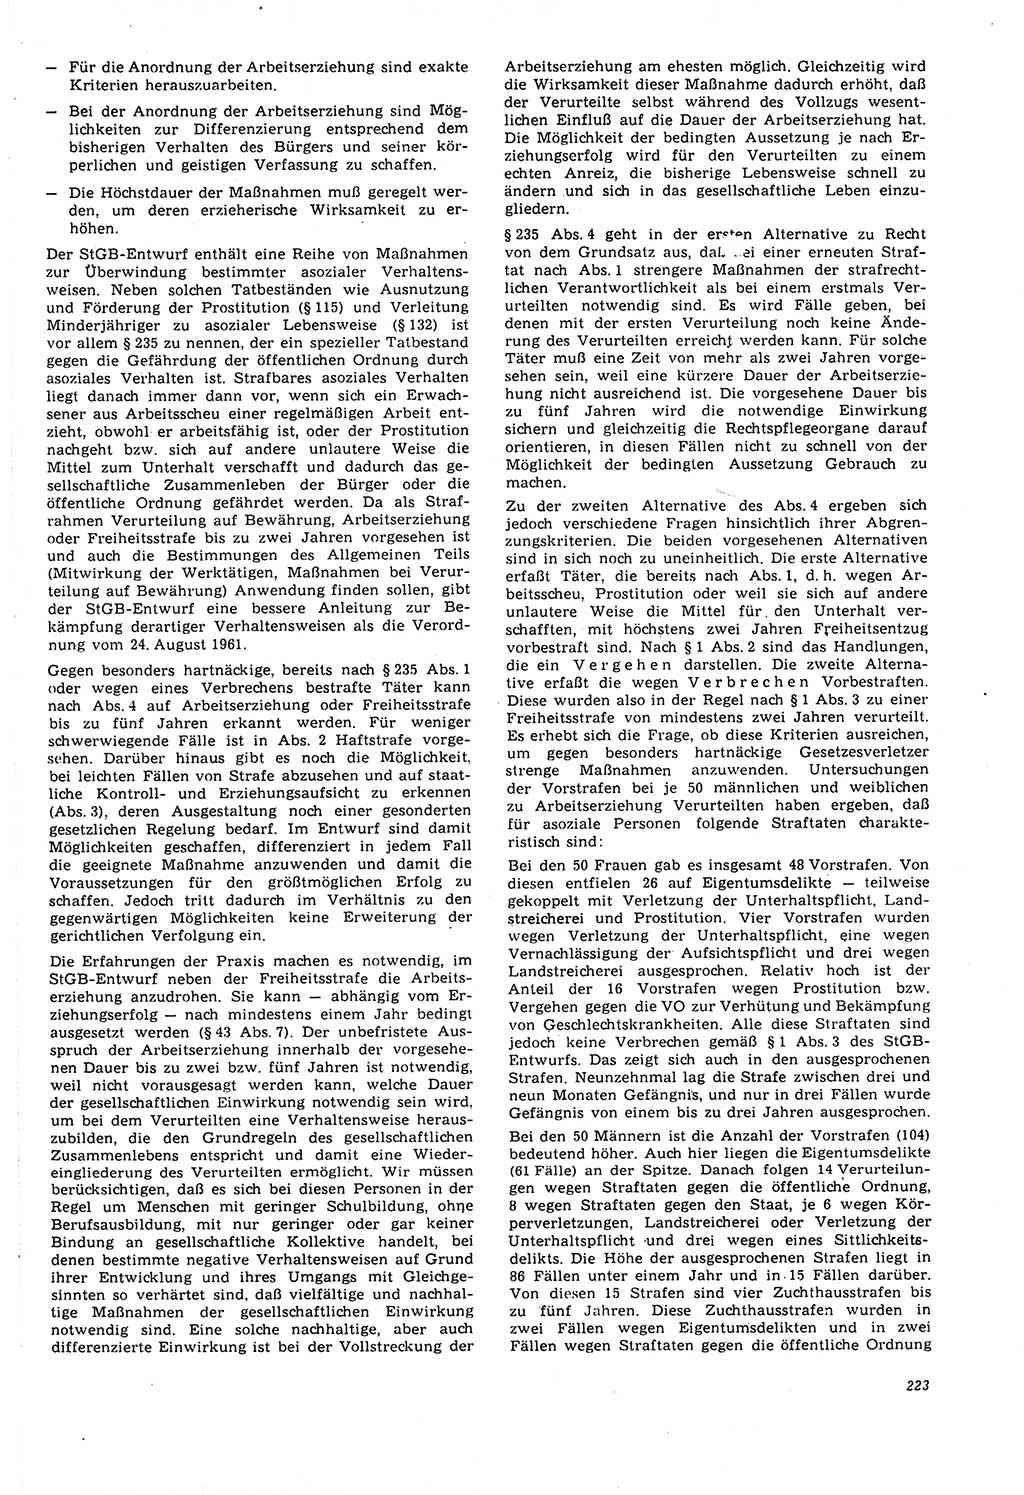 Neue Justiz (NJ), Zeitschrift für Recht und Rechtswissenschaft [Deutsche Demokratische Republik (DDR)], 21. Jahrgang 1967, Seite 223 (NJ DDR 1967, S. 223)